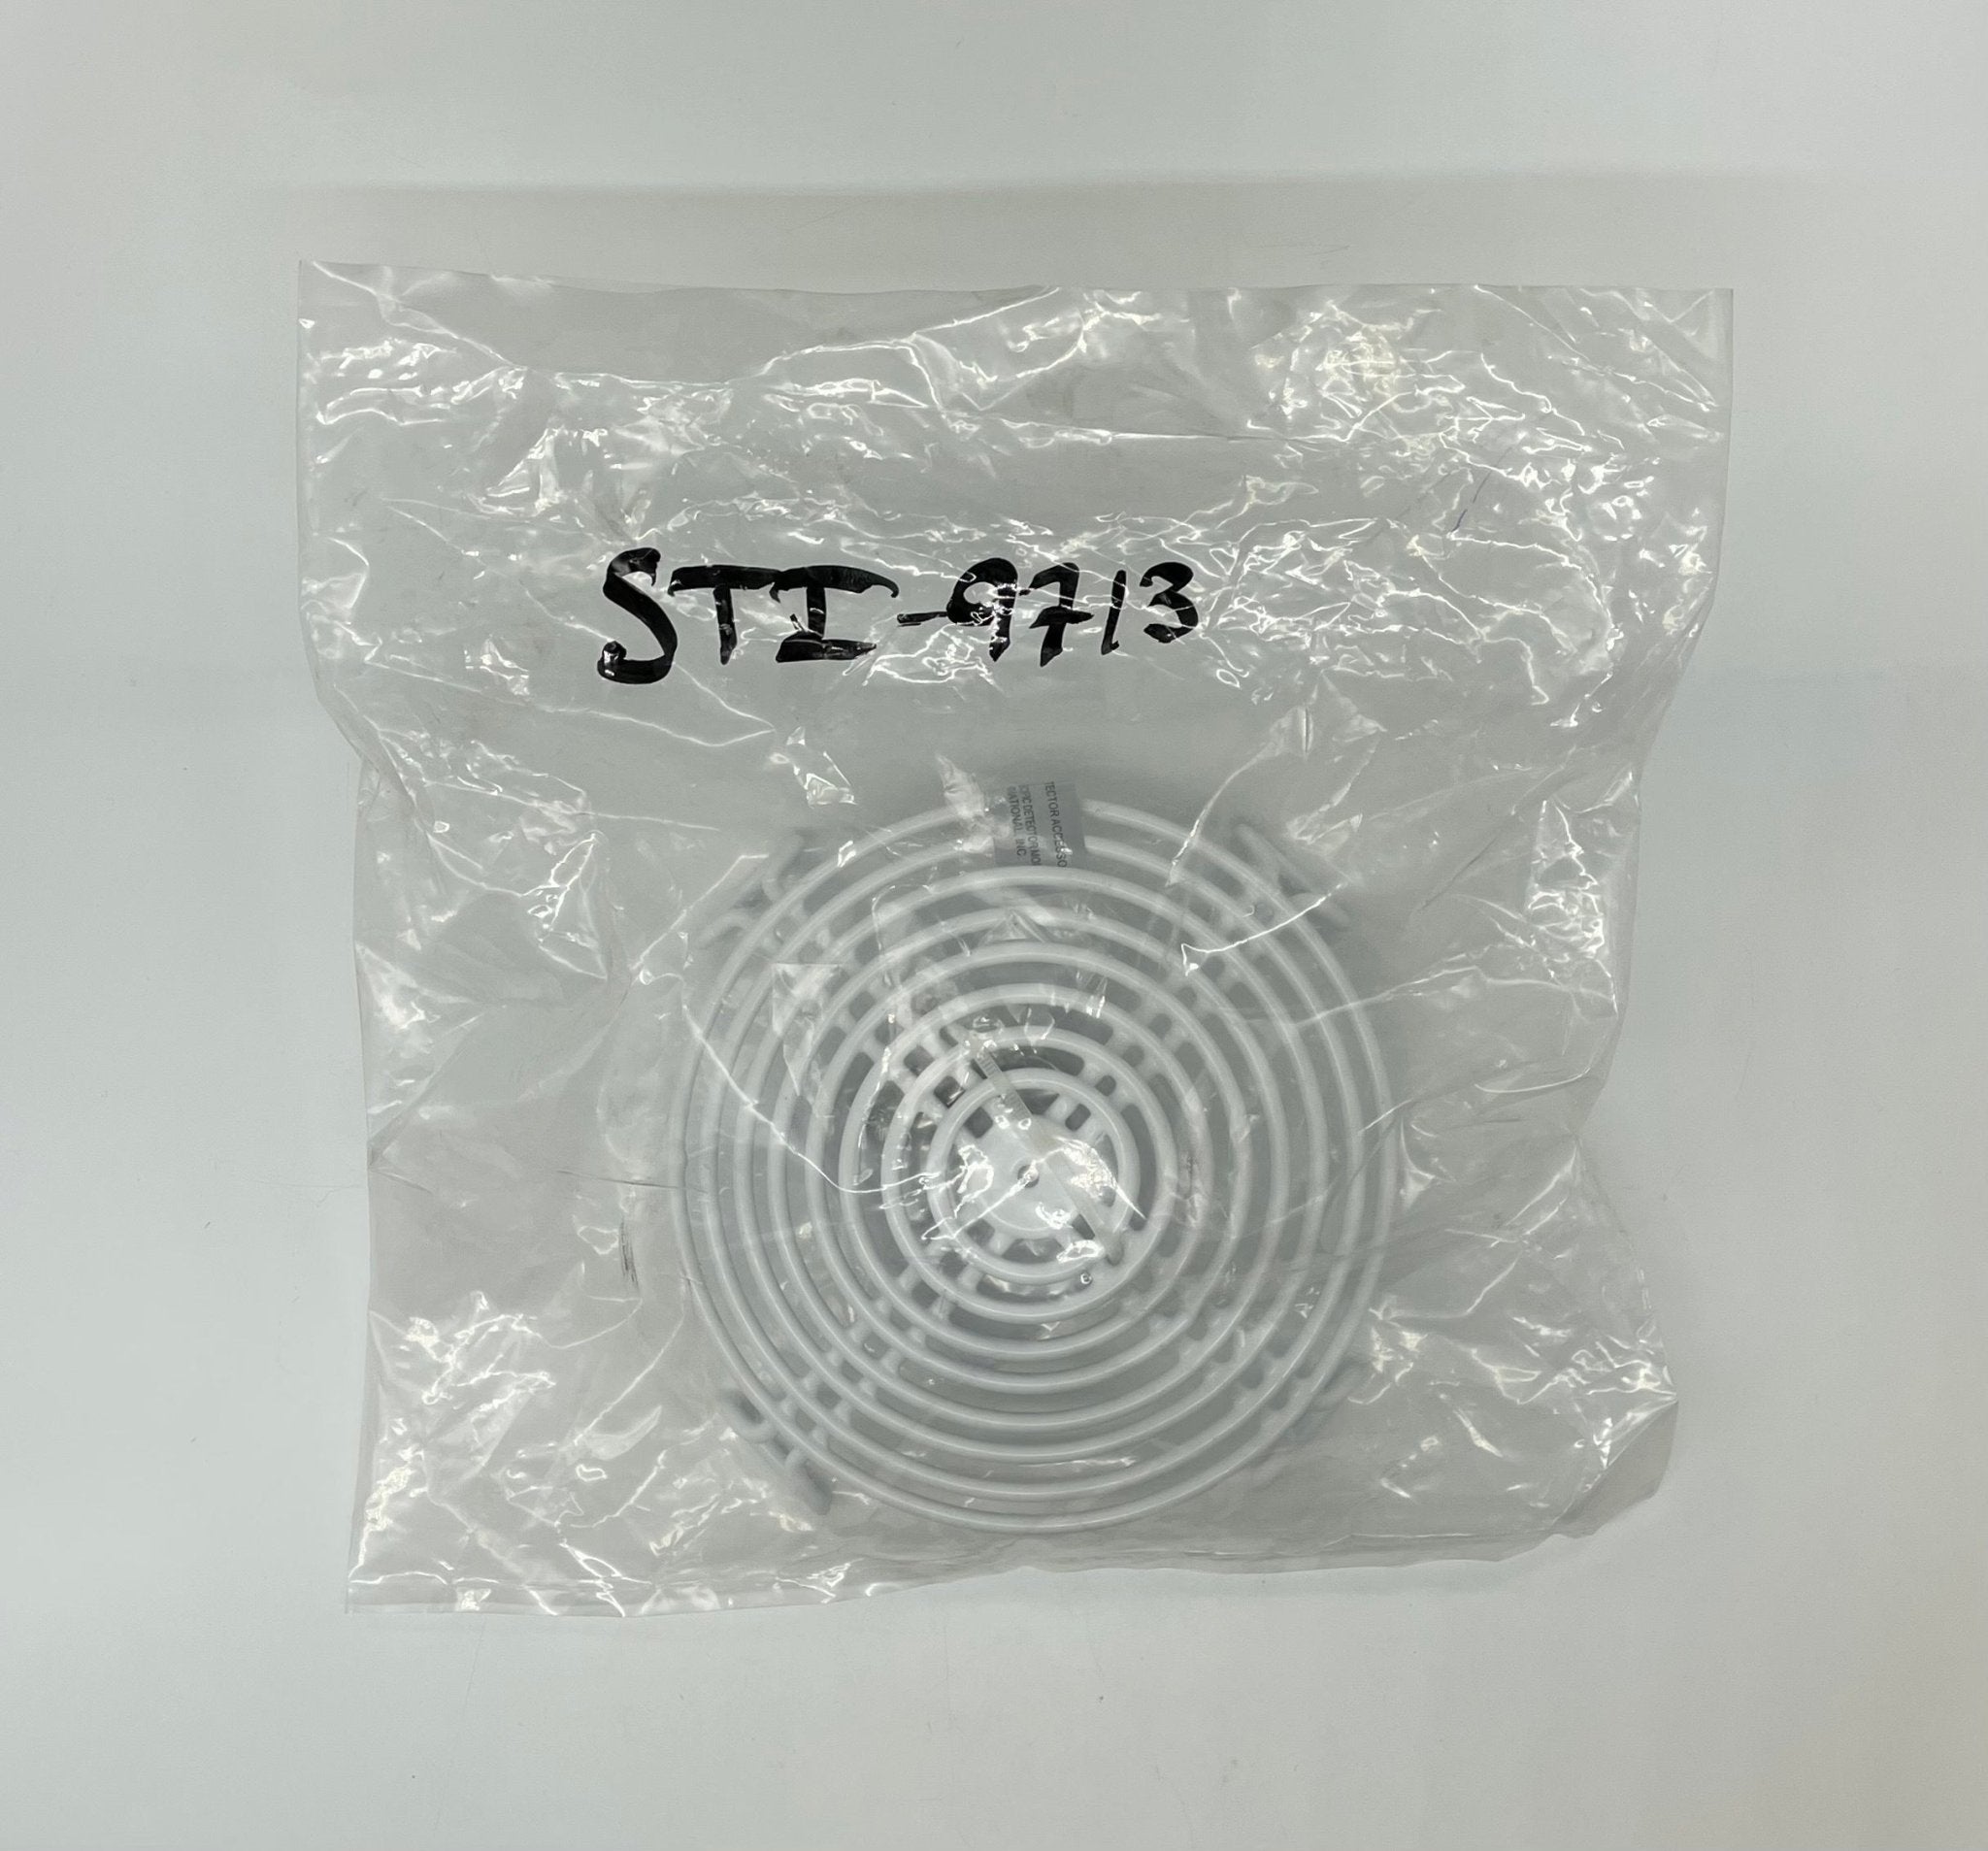 STI-9713 - The Fire Alarm Supplier